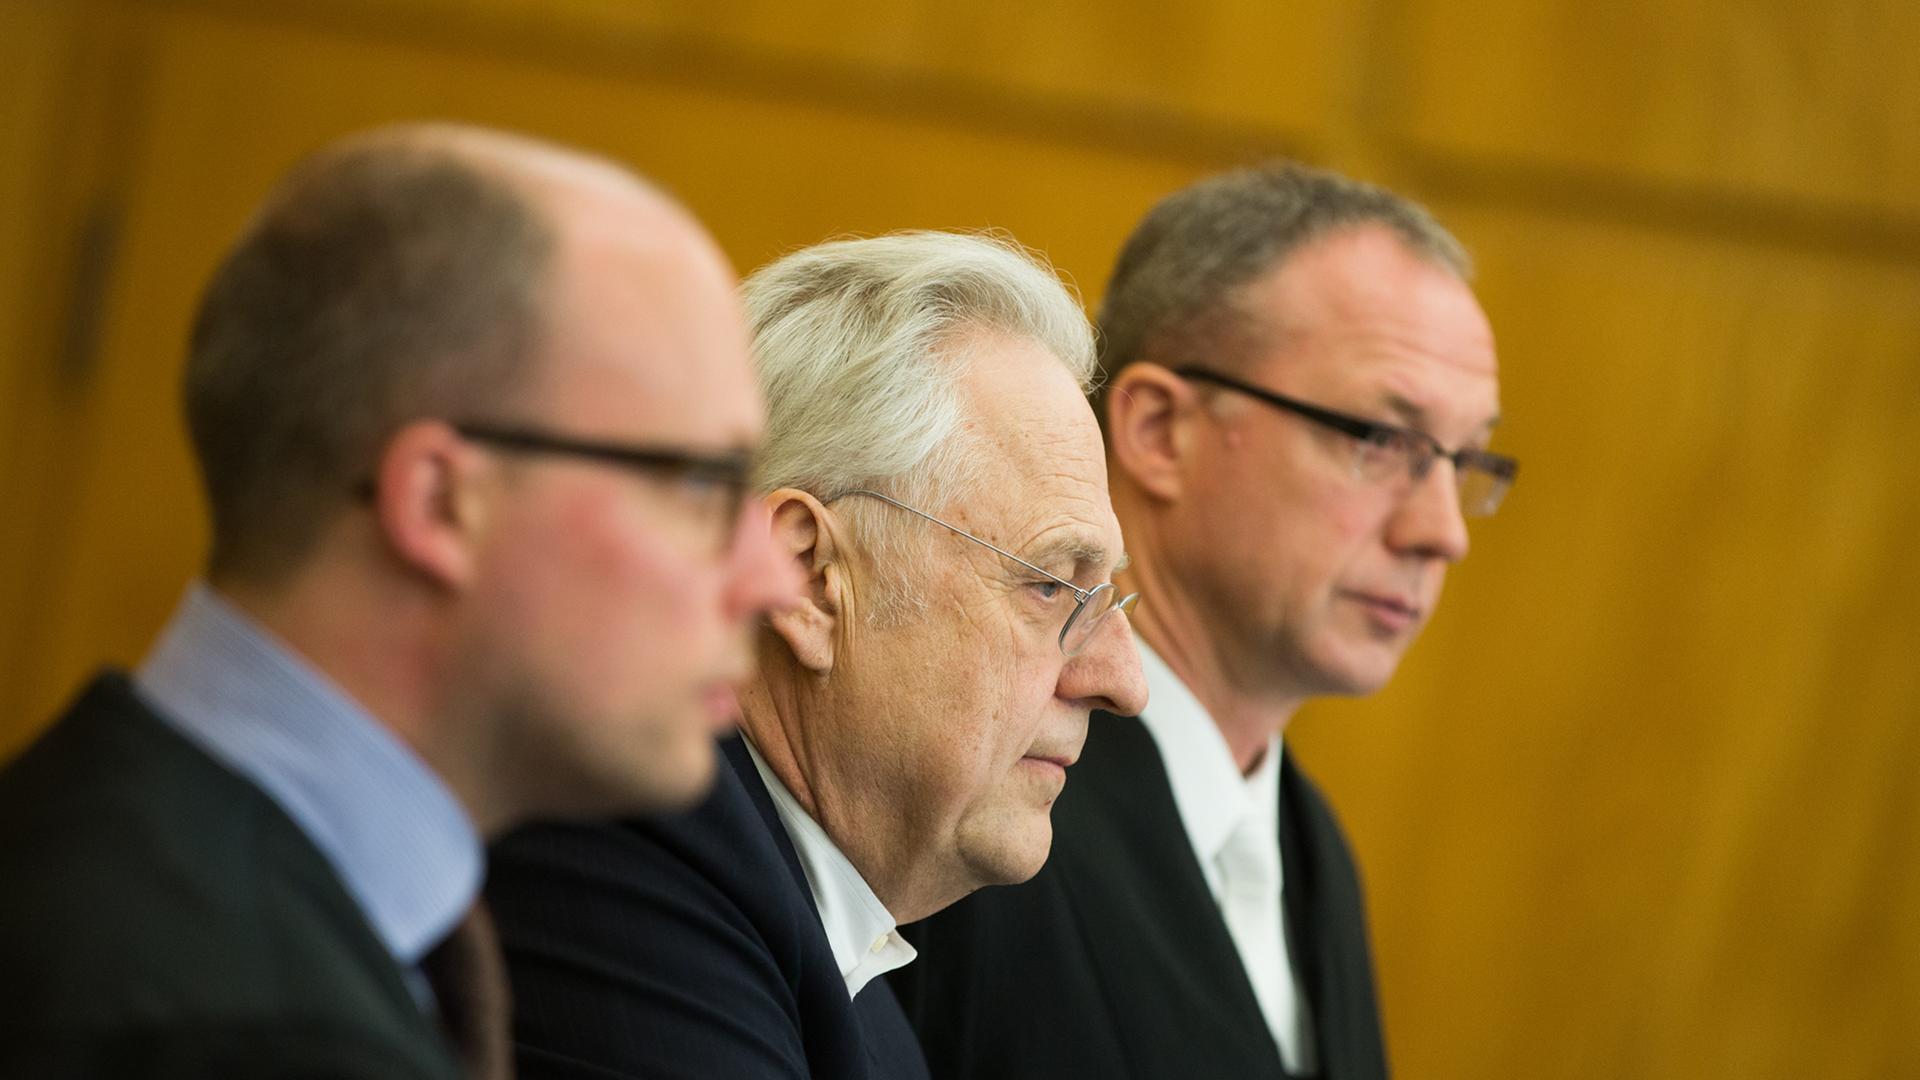 Kunstberater Helge Achenbach steht am 16.03.2015 vor Prozessbeginn im Landgericht in Essen (Nordrhein-Westfalen) zwischen seinen Anwälten Markus Adick (l) und Thomas Elsner (r).